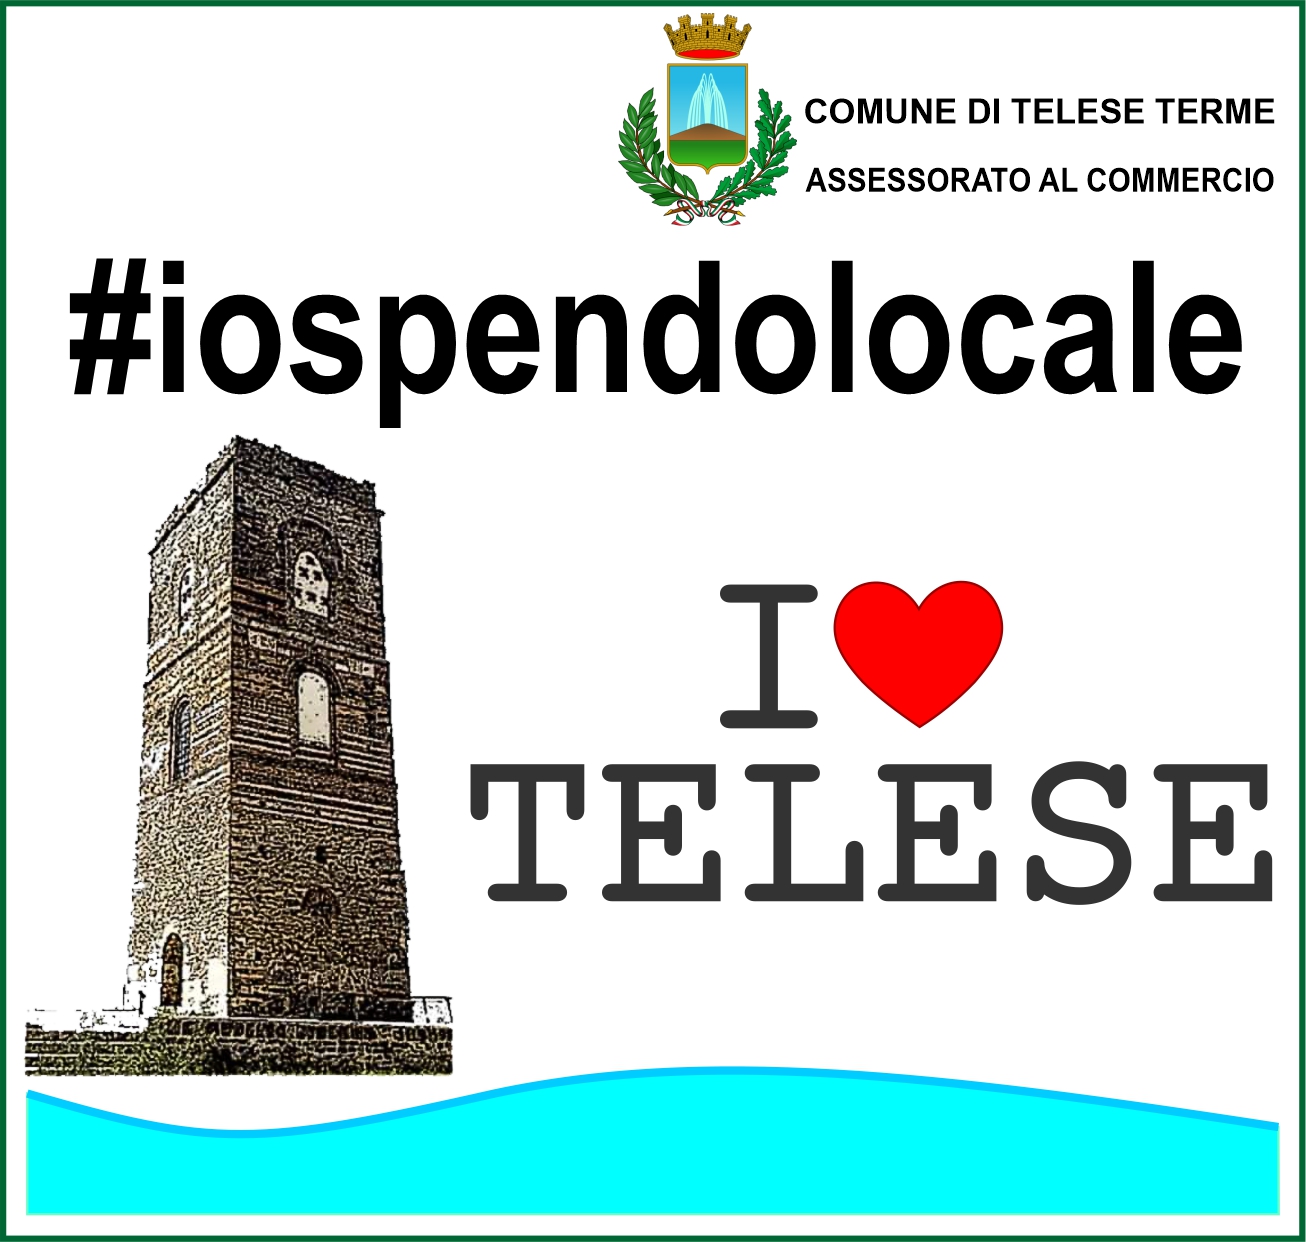 Telese Terme| #Iospendolocale, la campagna di sensibilizzazione per sostenere il commercio locale